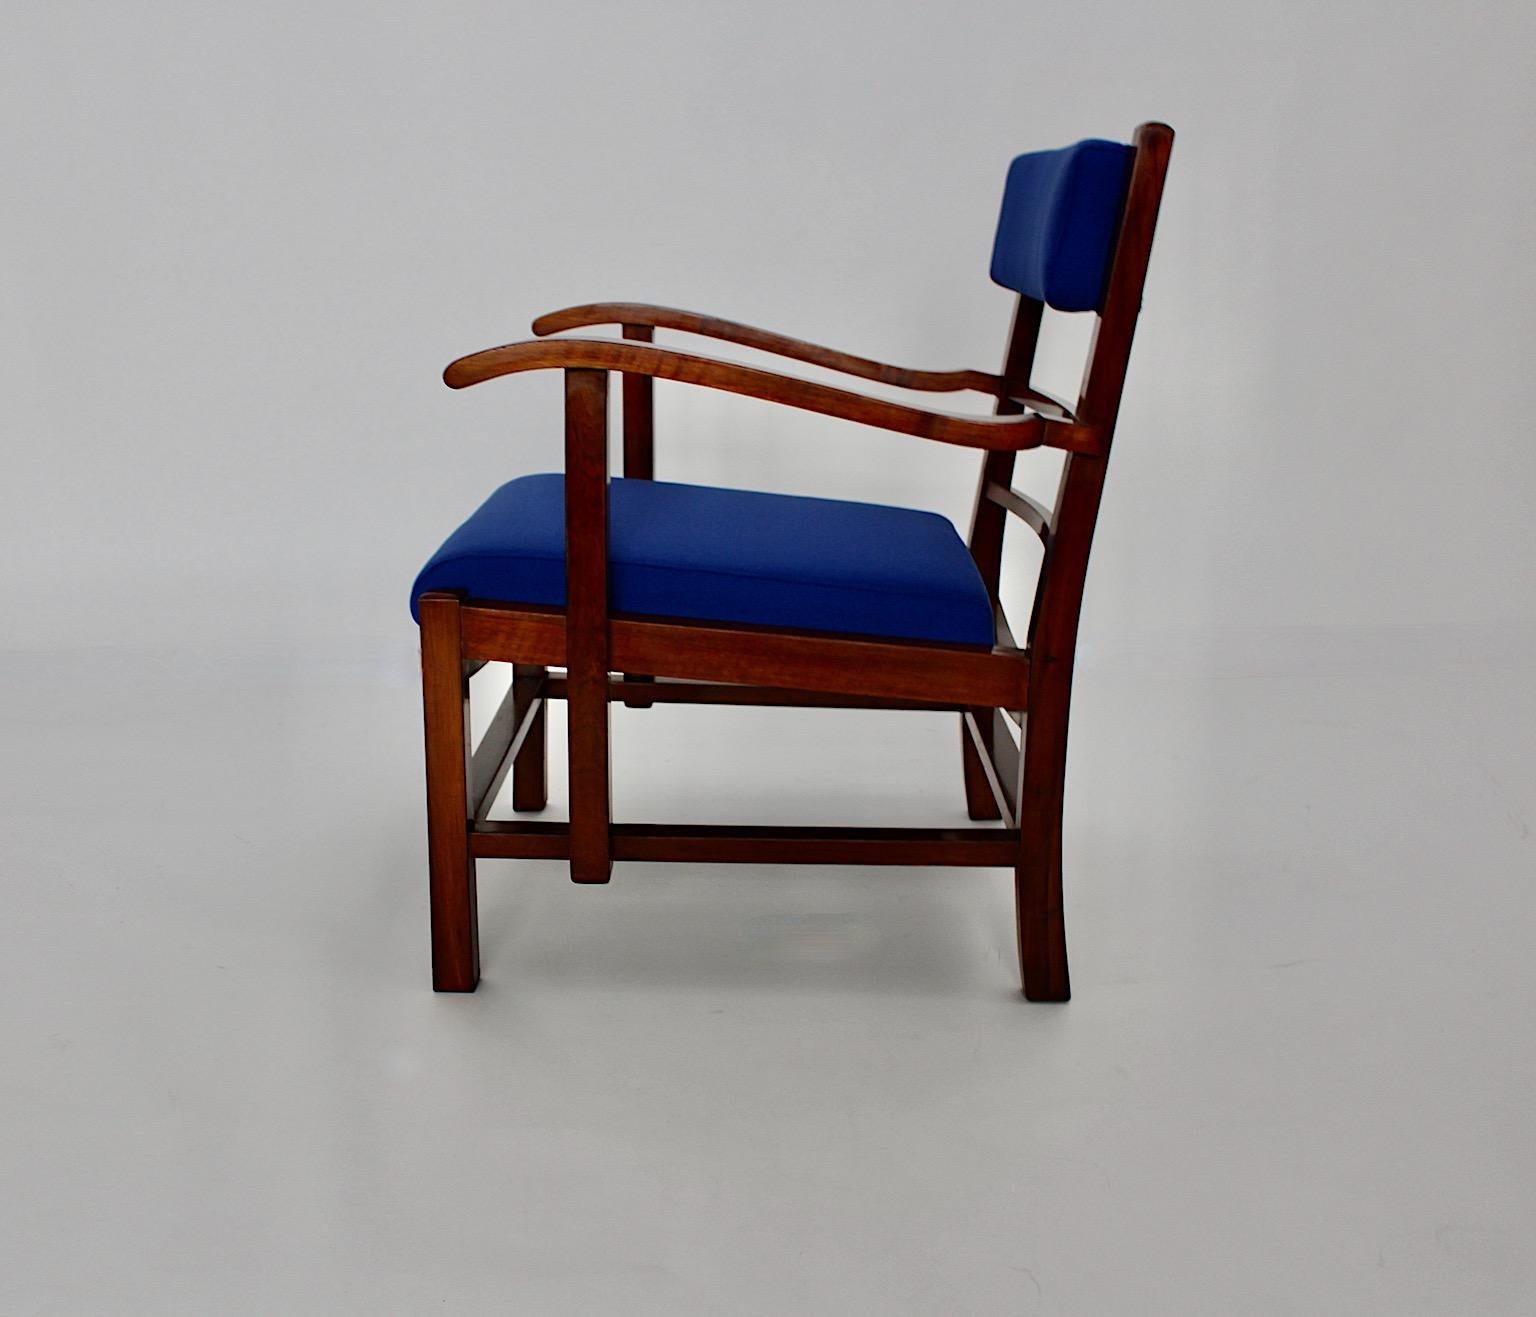 Fauteuil ou chaise longue Art Déco vintage en noyer et tissu bleu électrique conçu et réalisé vers 1925 à Vienne dans le cercle de Fritz Gross.
Alors que le cadre en noyer est poli à la gomme-laque à la main, l'assise et le dossier sont retapissés